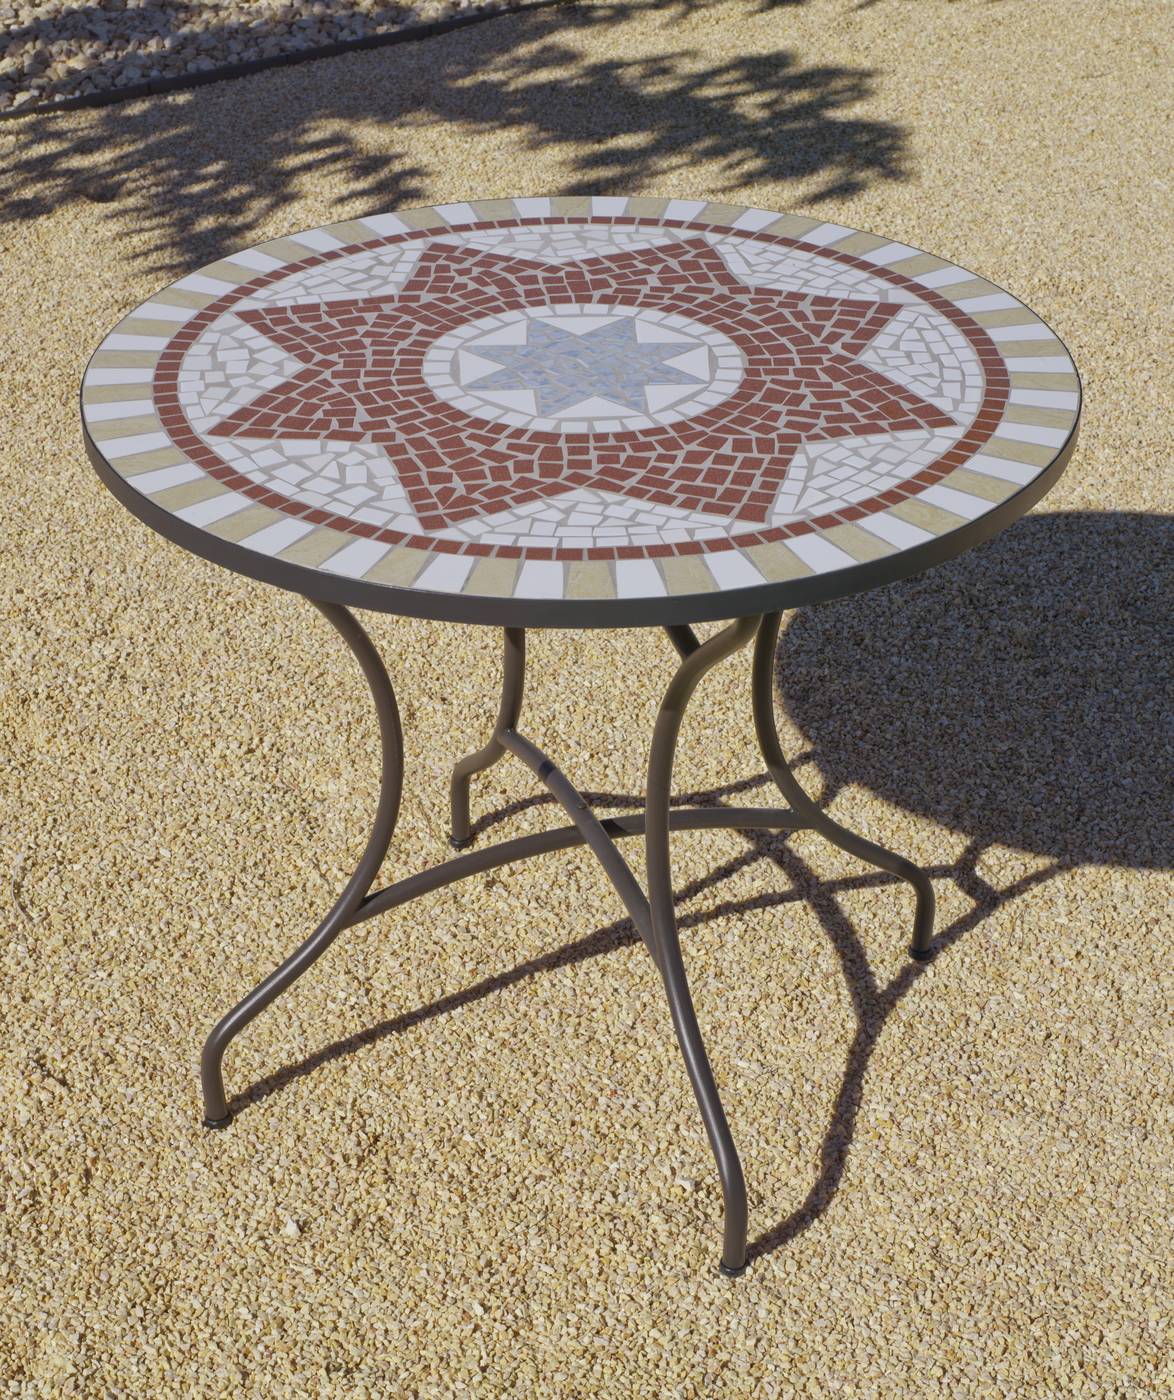 Mesa Mosaico Aney-100 - Mesa mosaico redonda. Estructura de acero forjado color bronce, con patas reforzadas y panel de mosaico